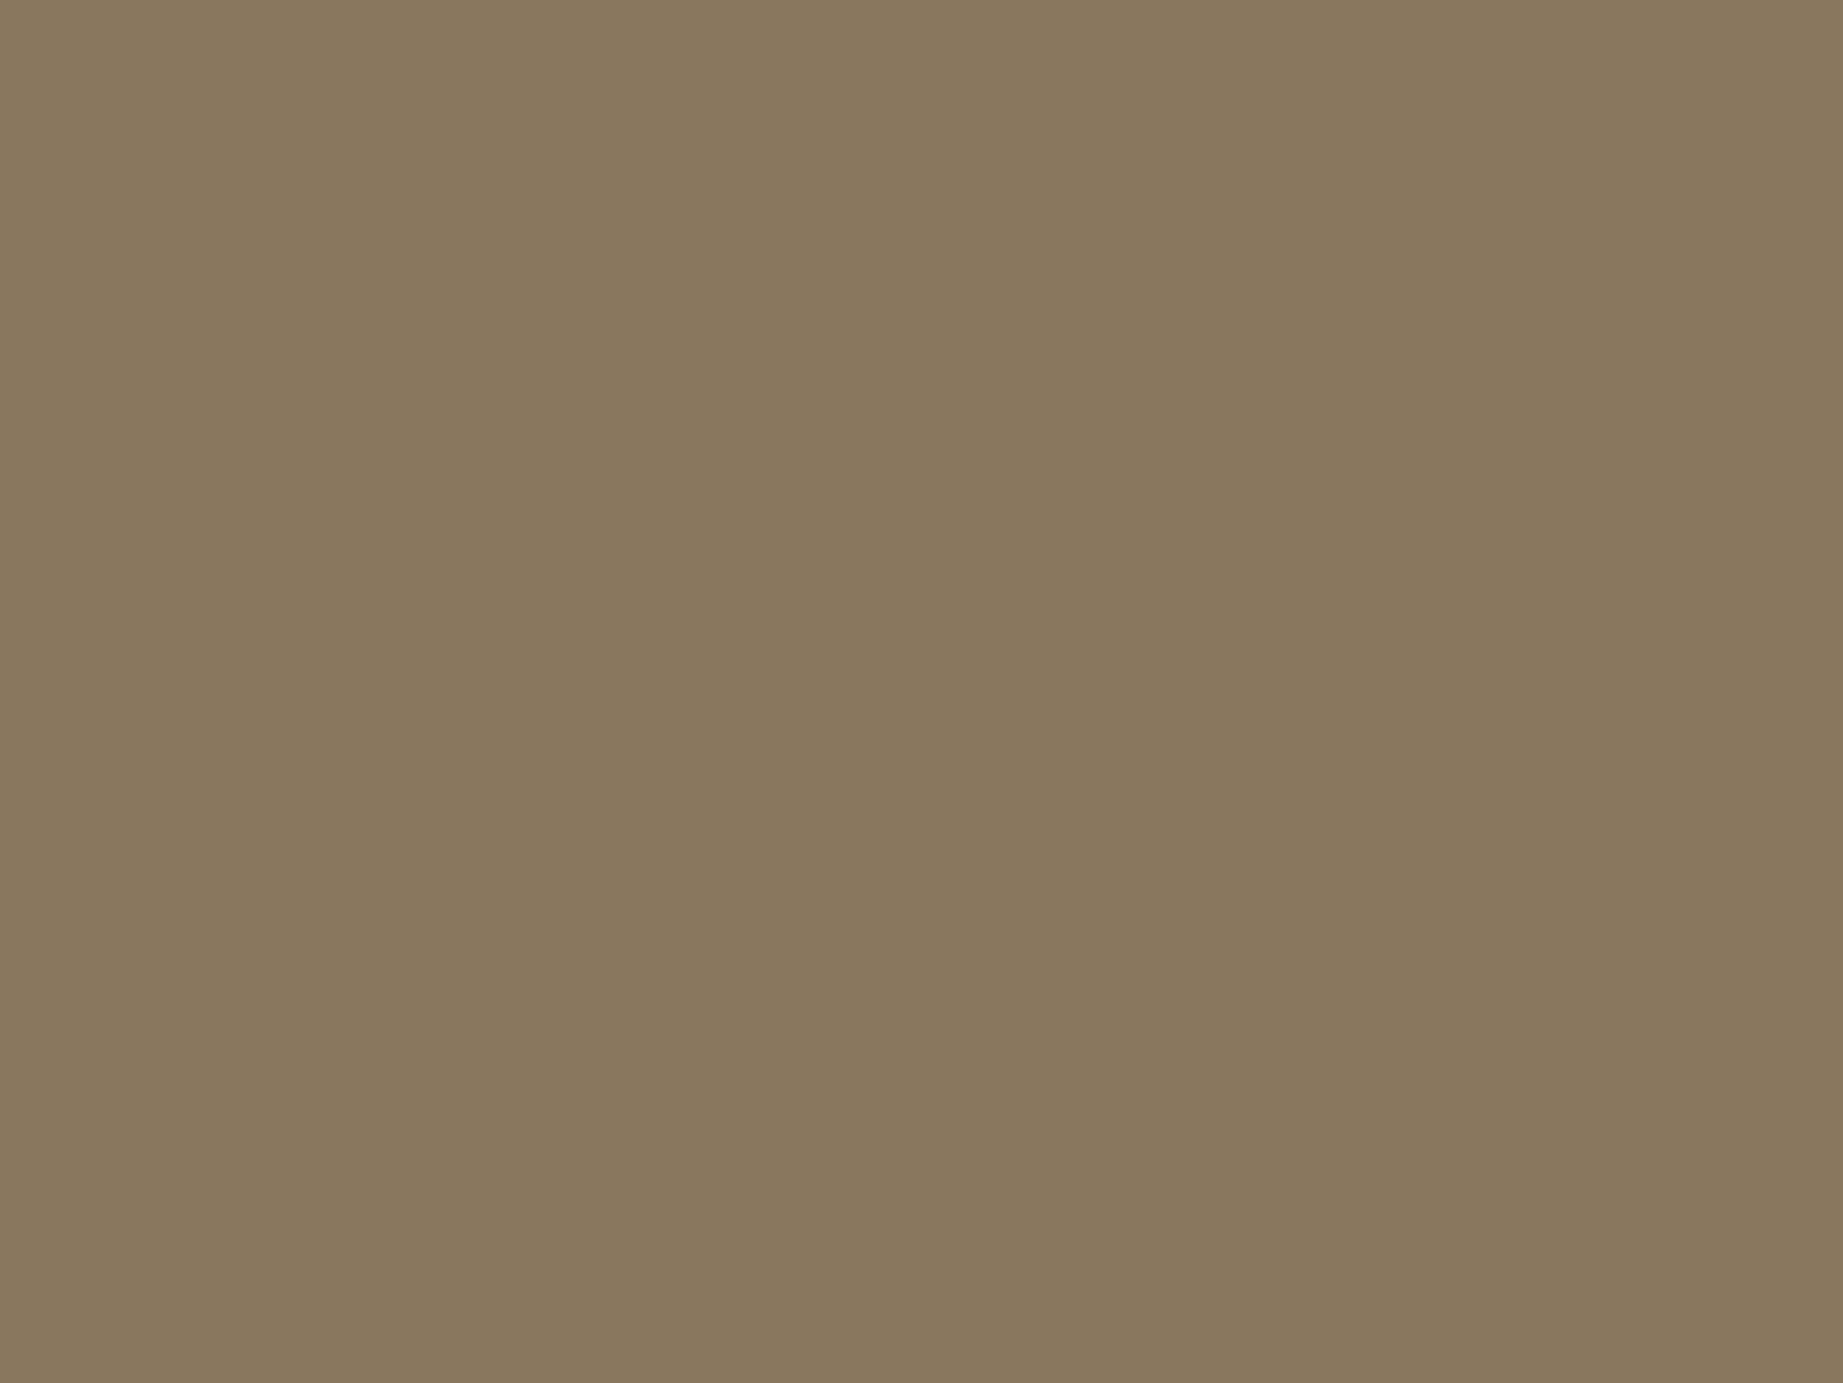 Илья Машков. Синие сливы (Фрукты на блюде) (фрагмент). 1910. Государственная Третьяковская галерея, Москва